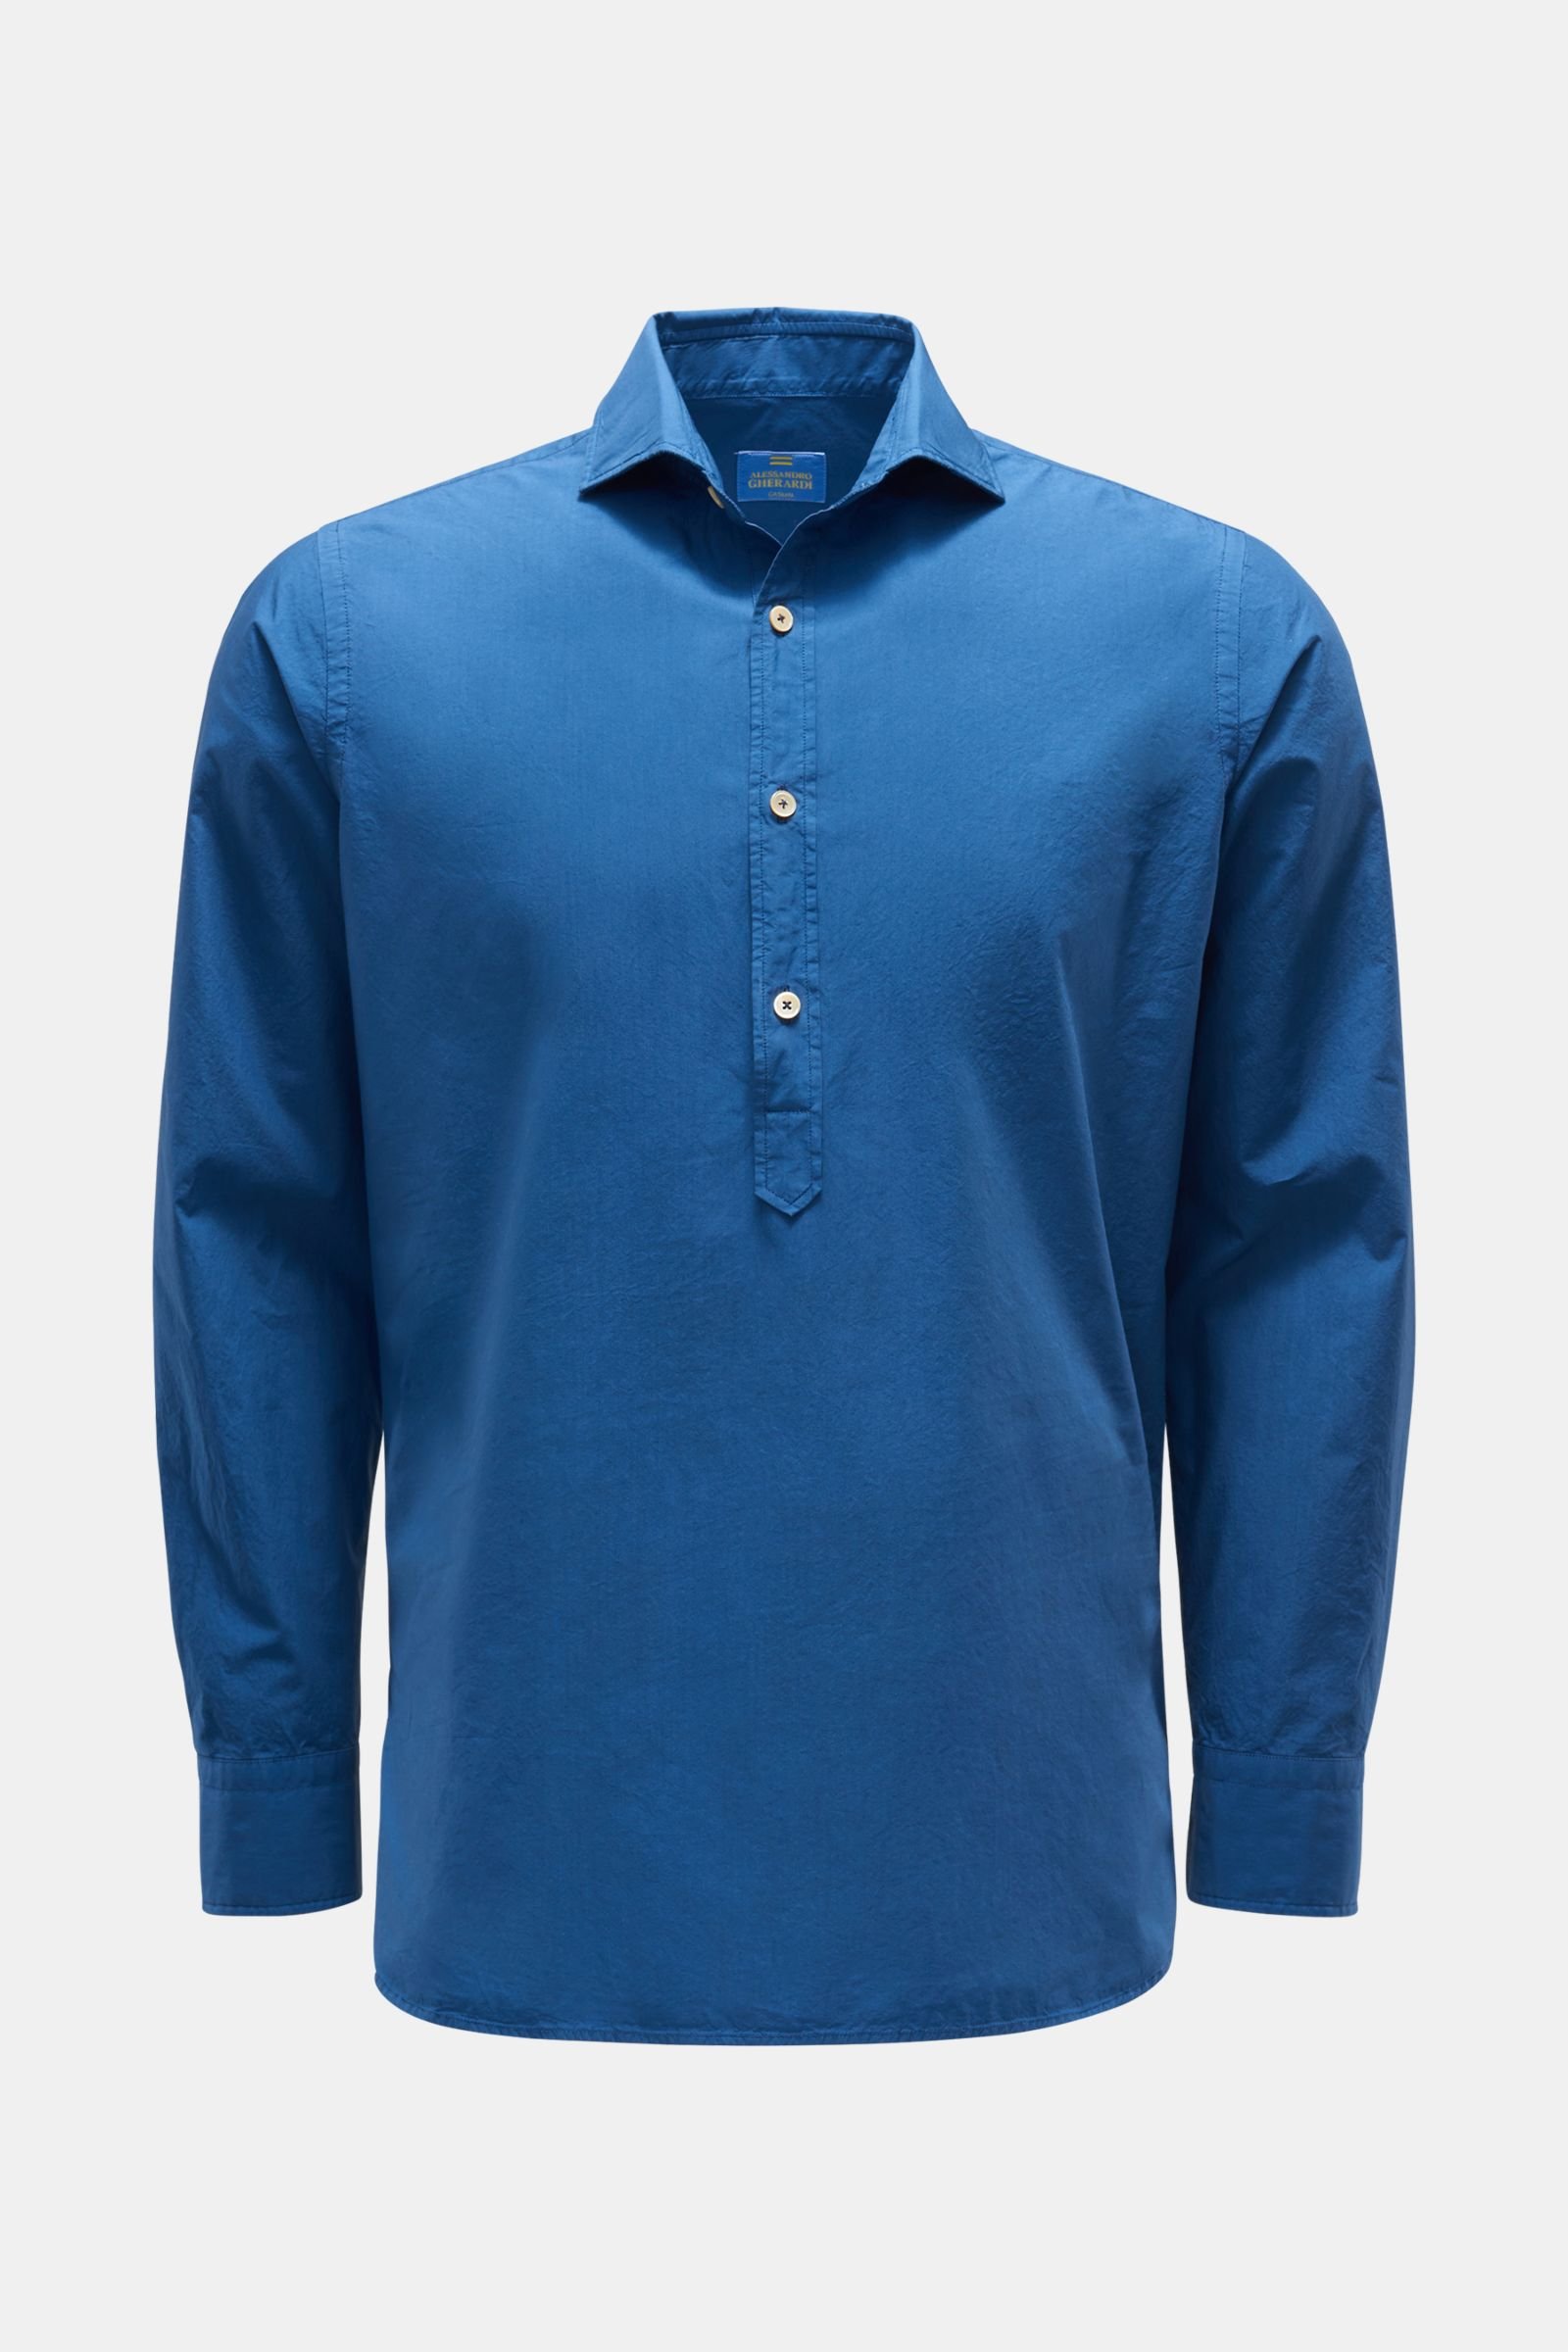 Popover shirt 'Polos' shark collar dark blue